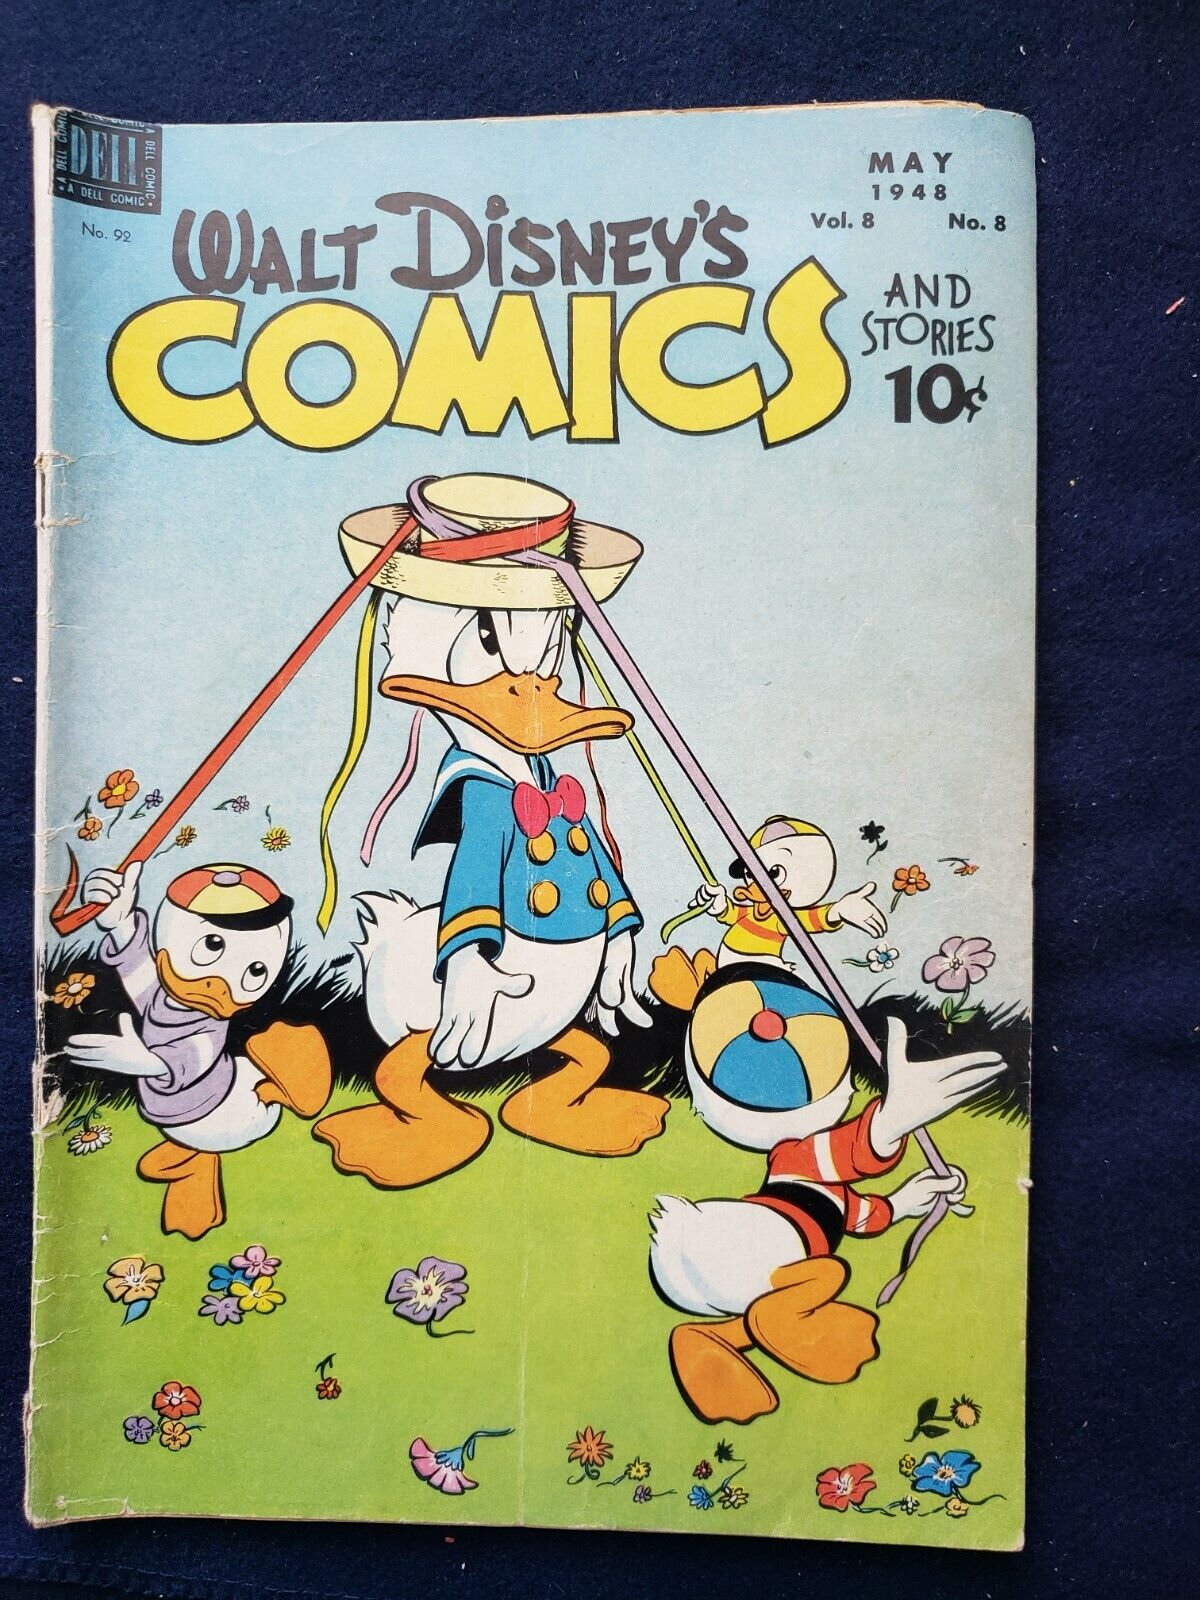 Walt Disney Comics Vol. 8 No. 8 • May 1948 • Donald Duck Mickey Mouse!